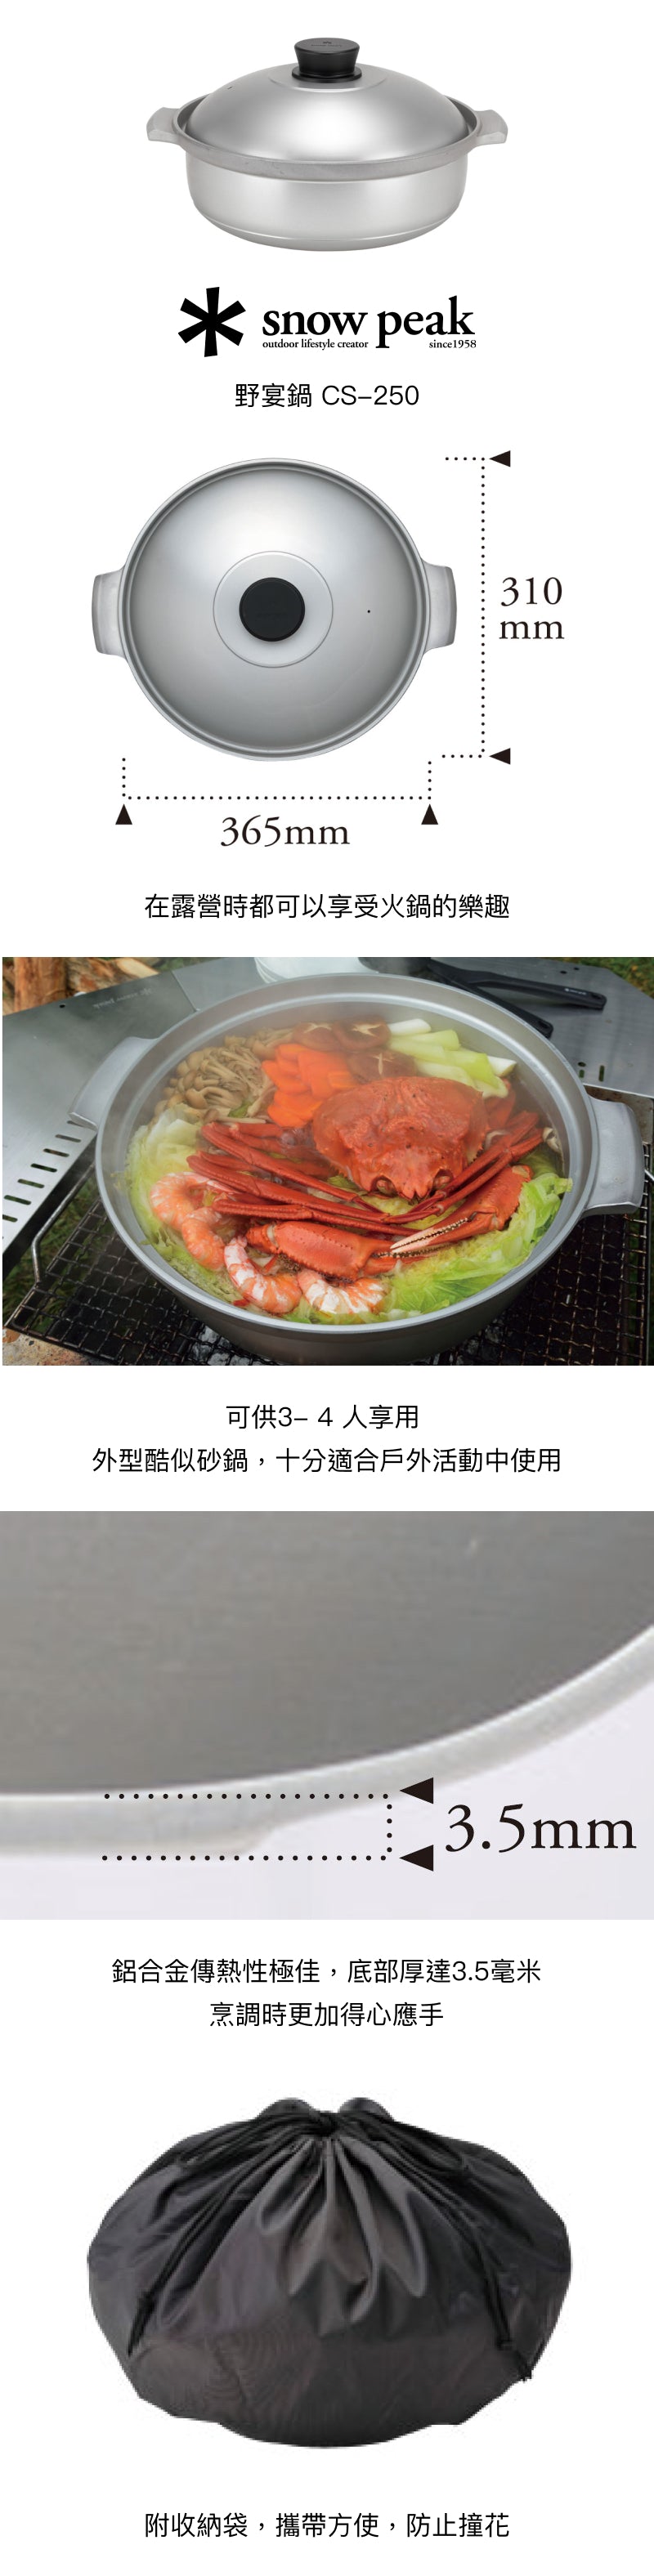 日本Snow Peak 野宴鍋Banquet Pot 30 CS-250 – Afterwork Grocery 優質 